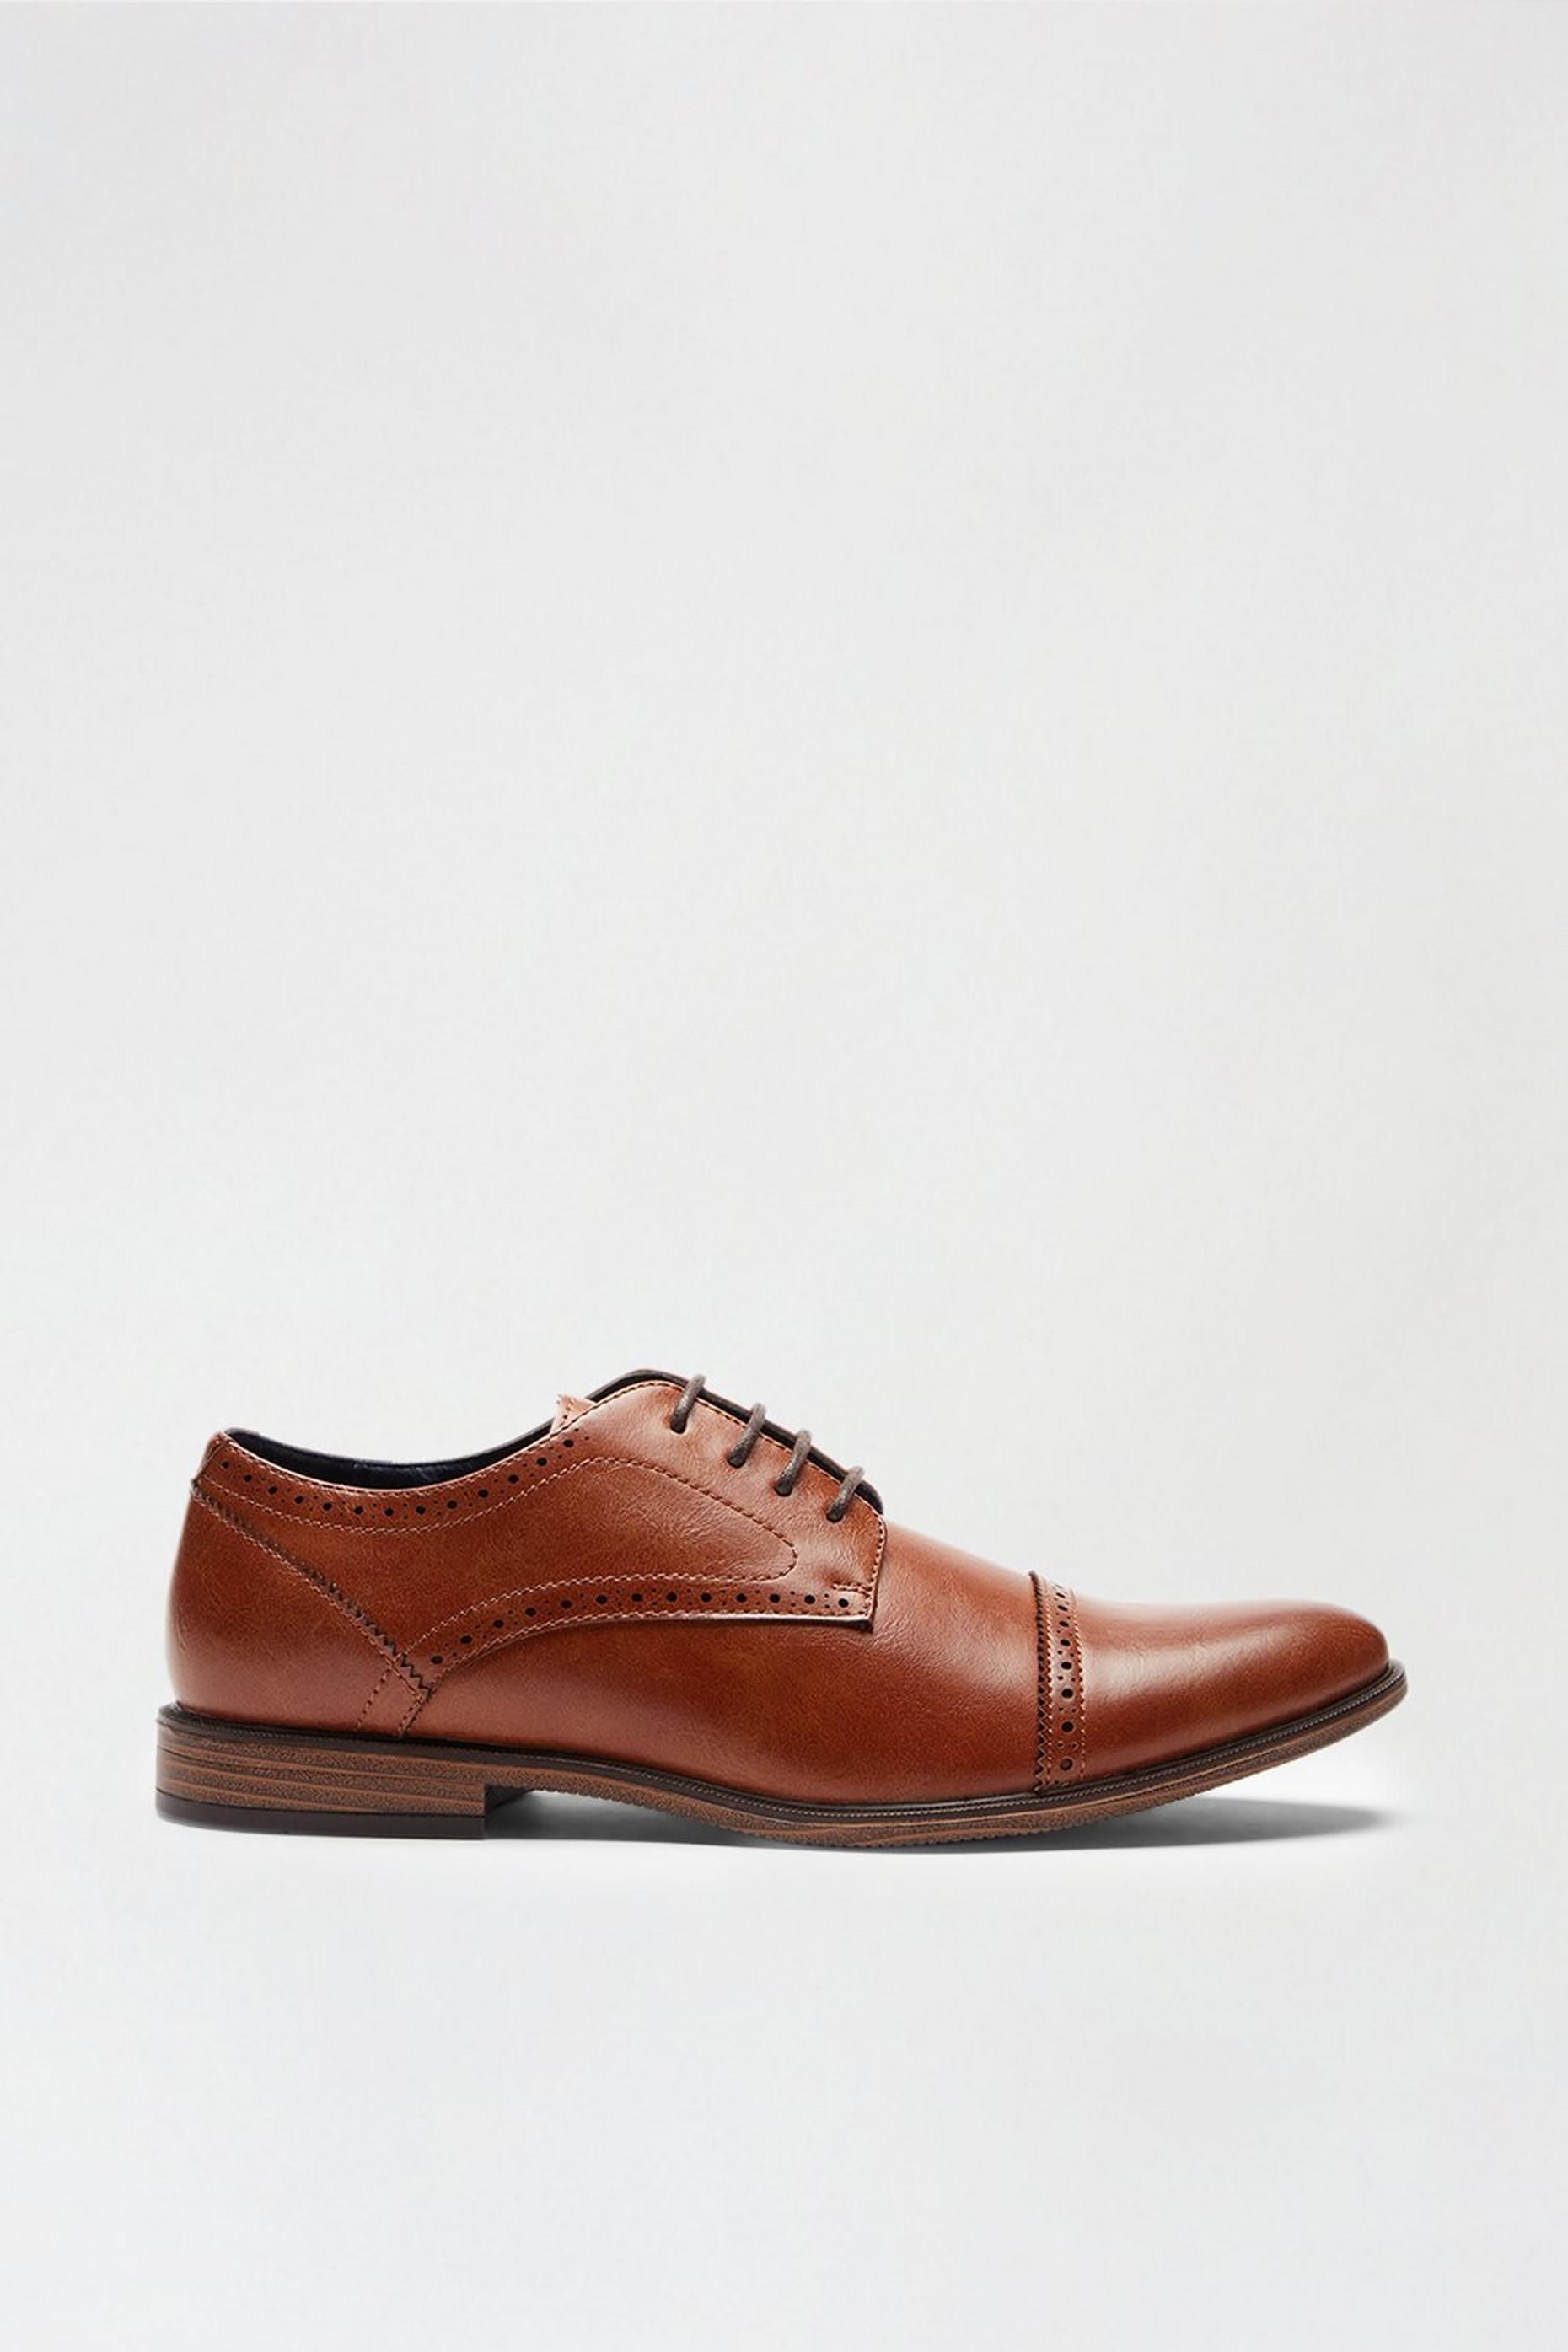 Men's Shoes | Casual & Formal Shoes | Burton